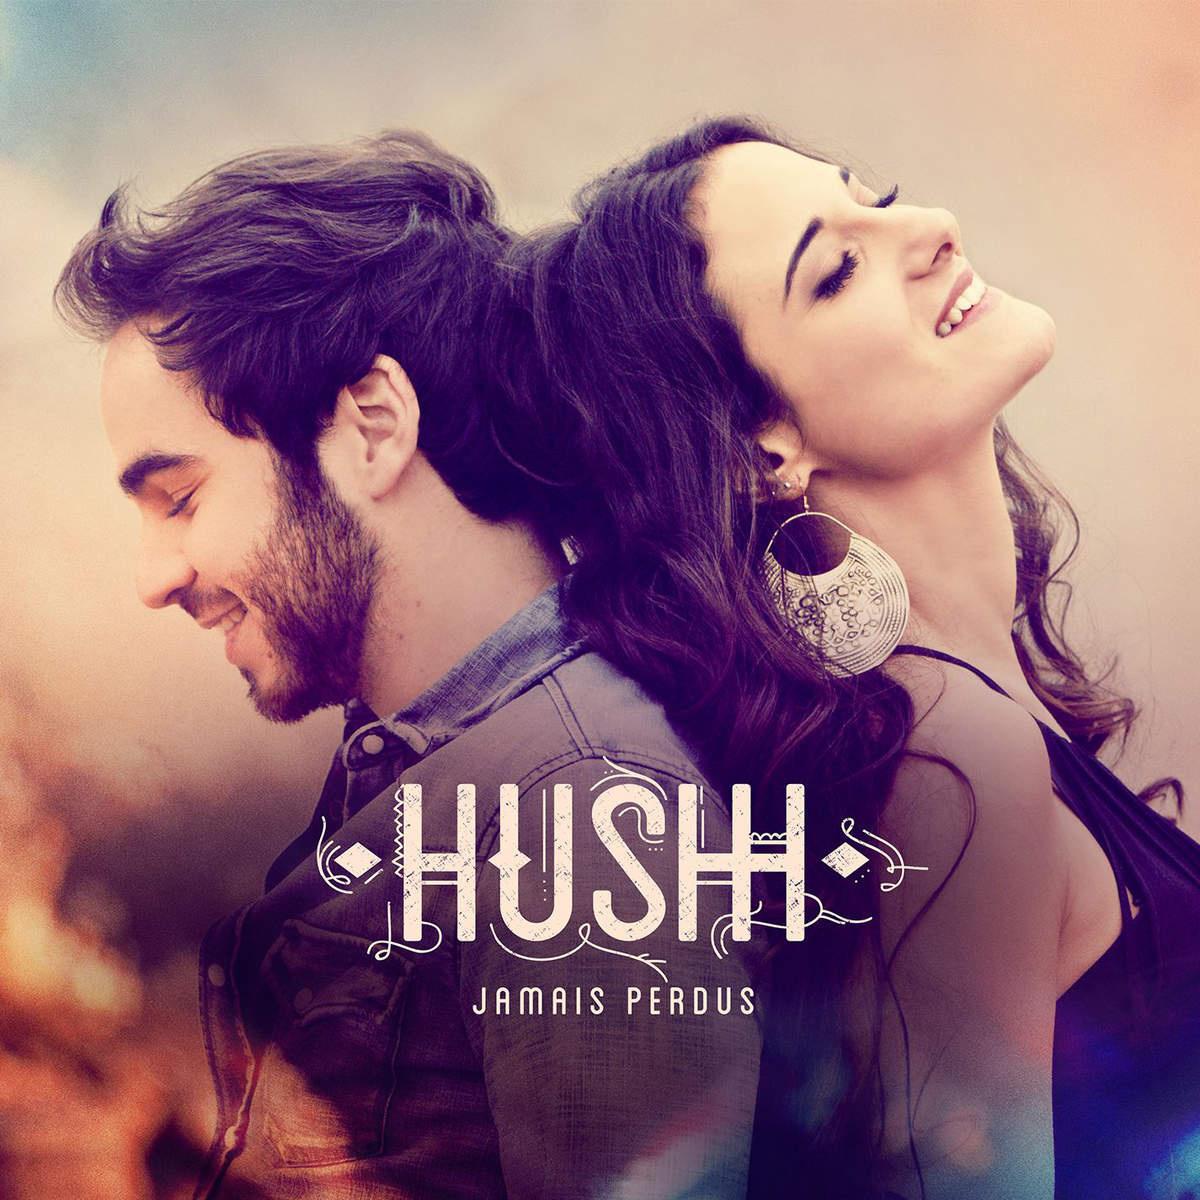 Hushh - Dans le rushh